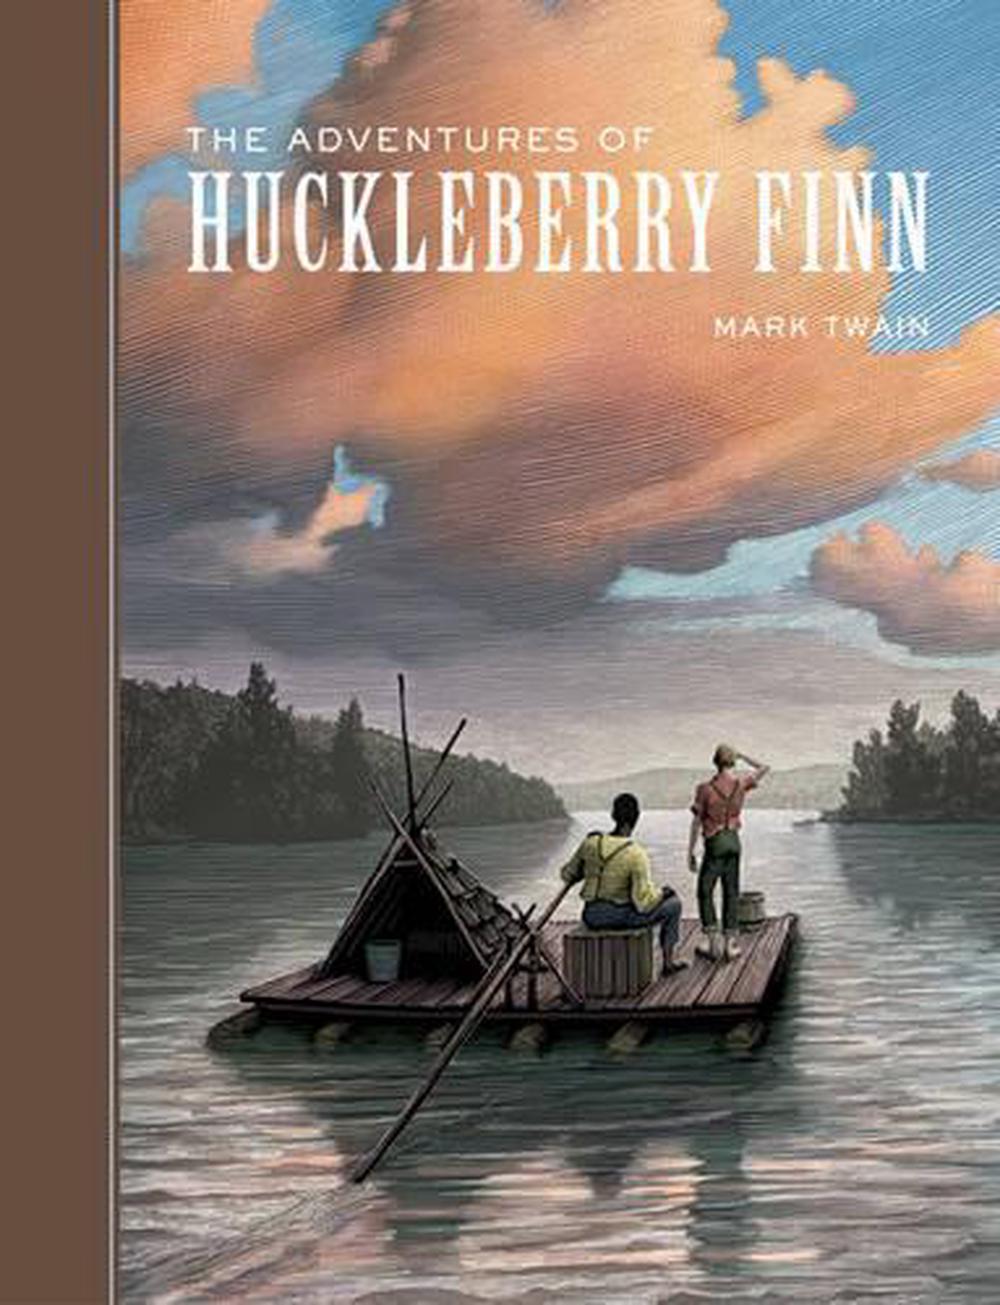 The Adventures of Huckleberry Finn for ios instal